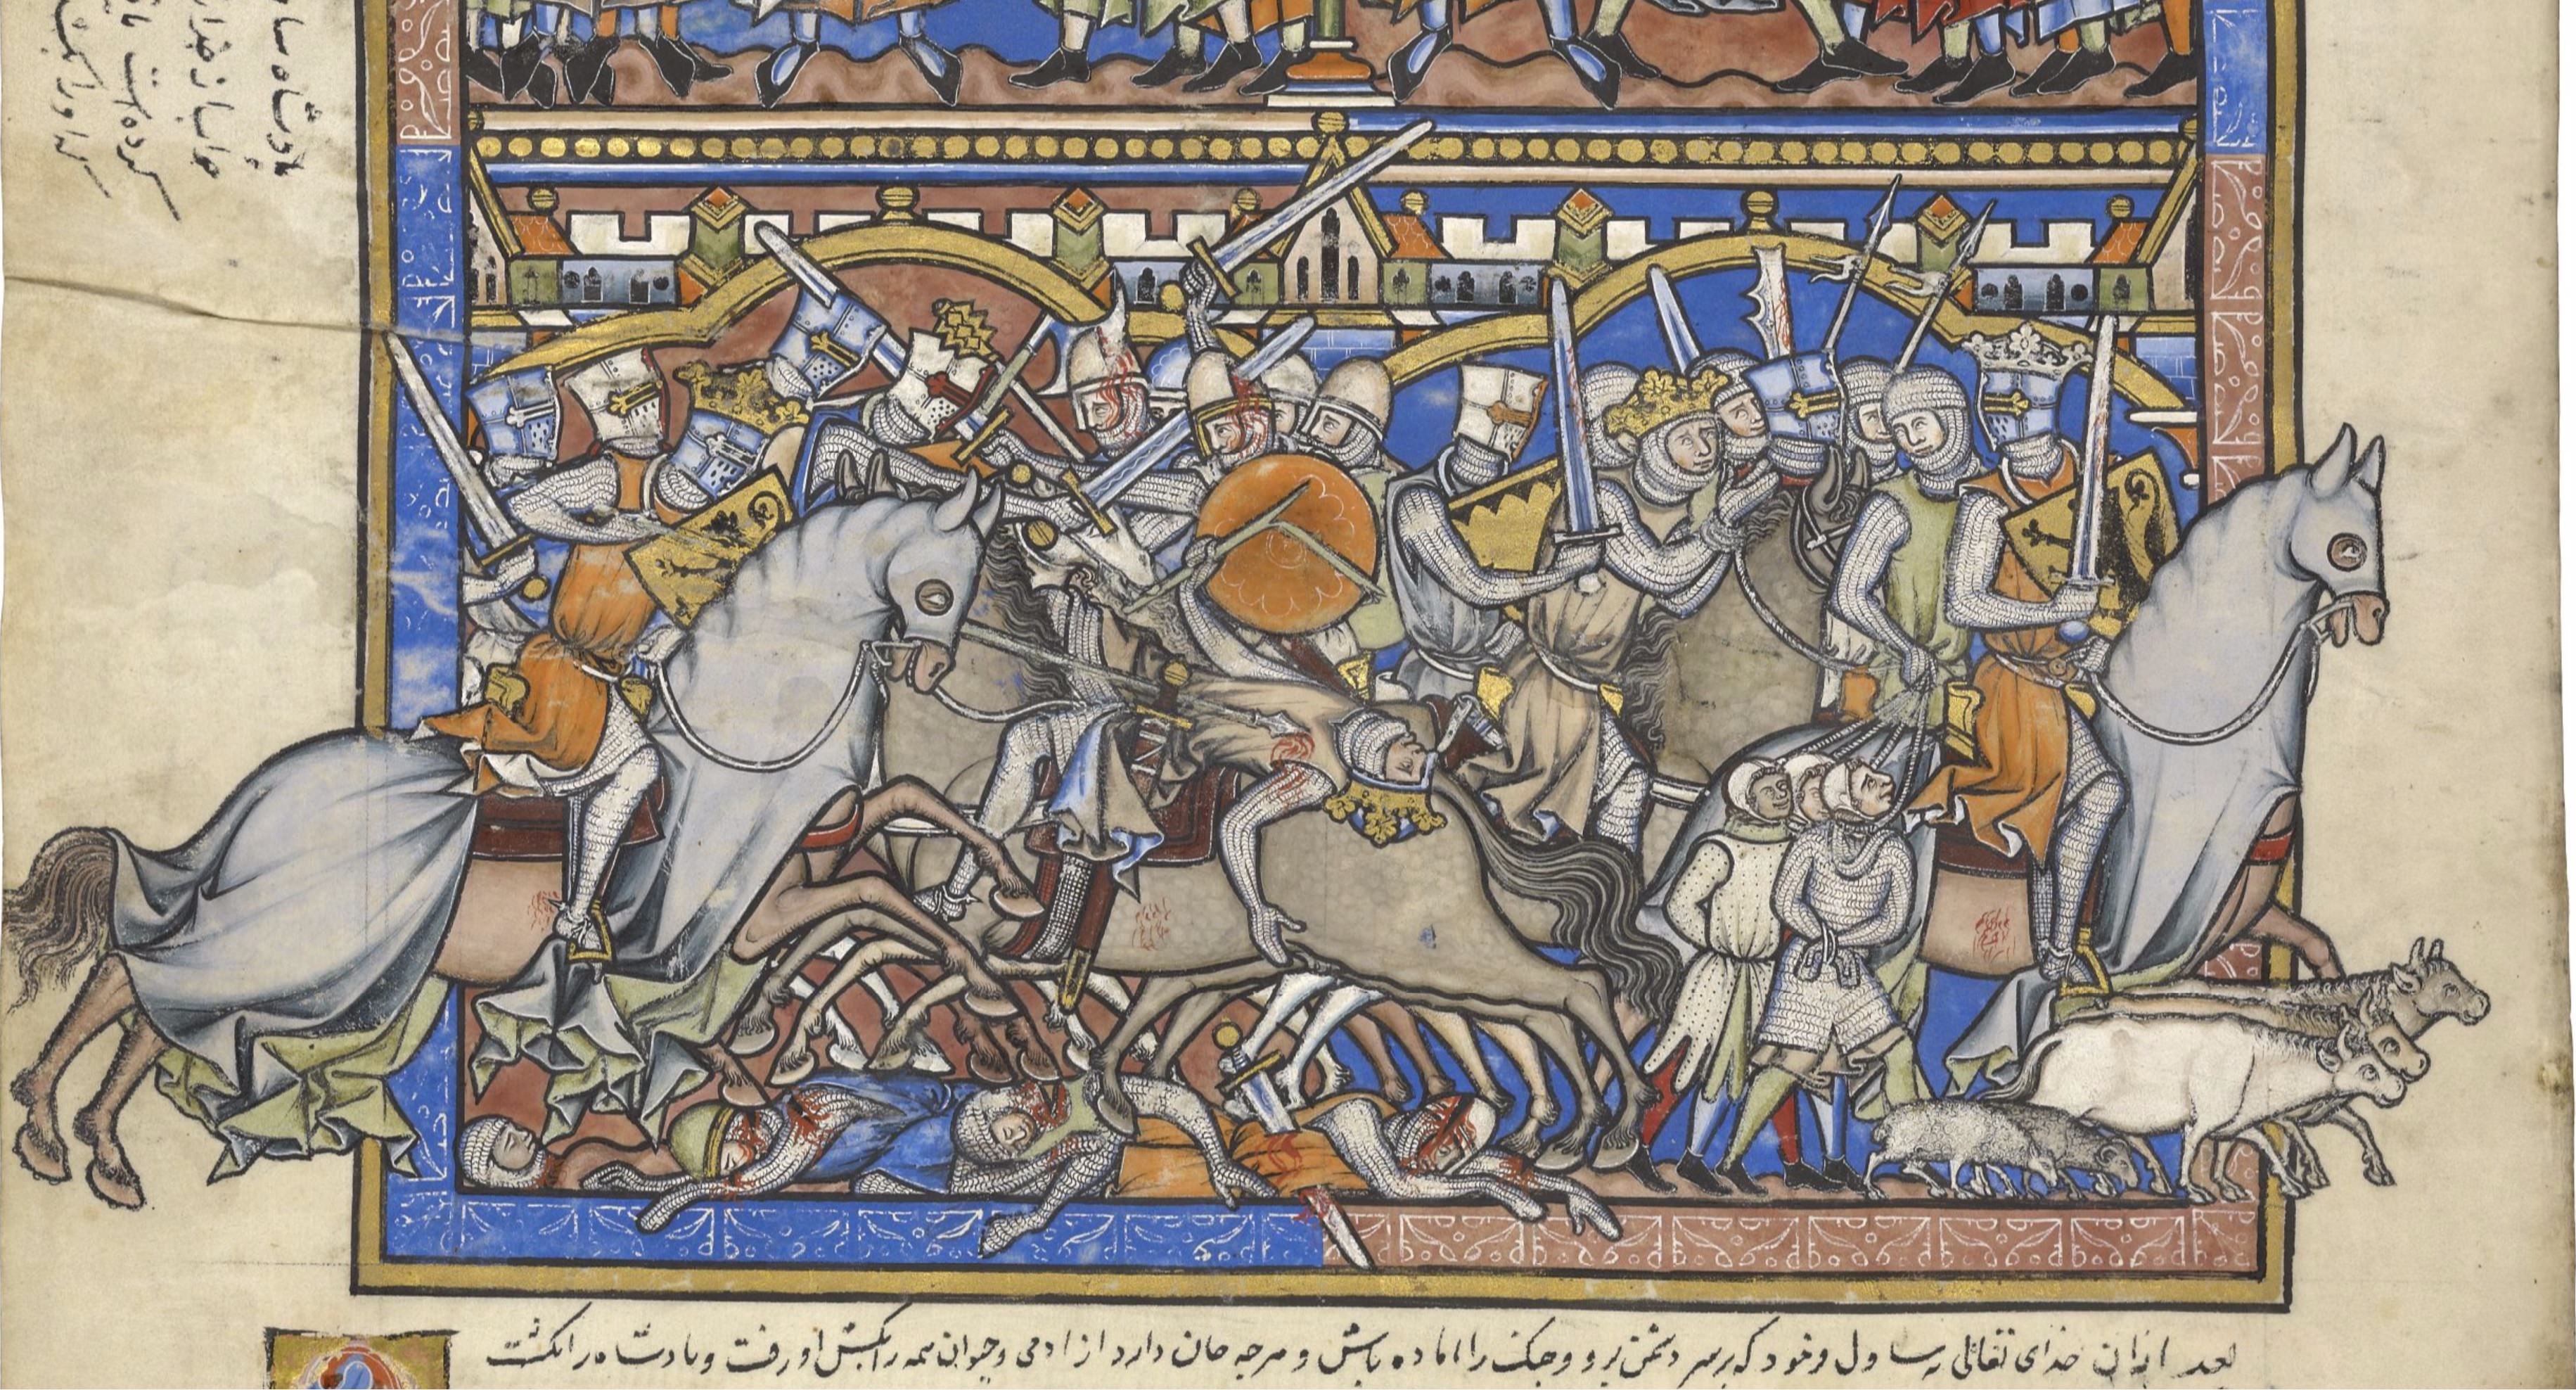 Fondos de manuscritos medievales - Álbum en Imgur